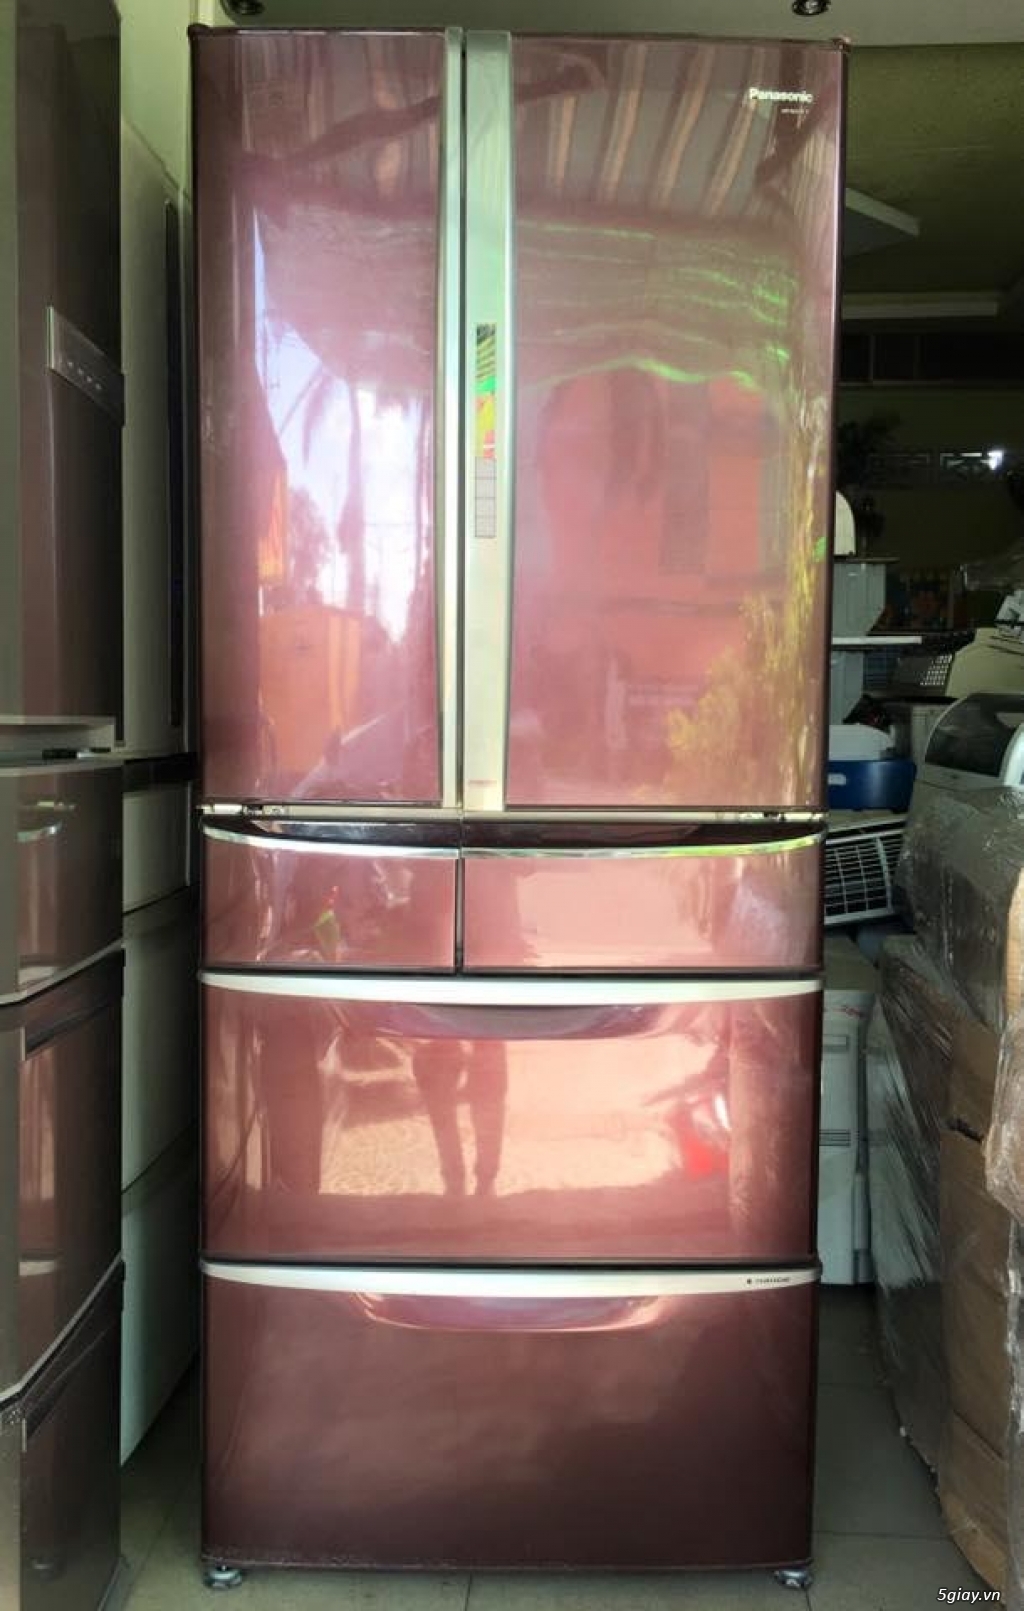 Tủ lạnh PANASONIC nội địa NR-F600XV 603Lít 6 cửa, Màu Nâu Đỏ rất sang